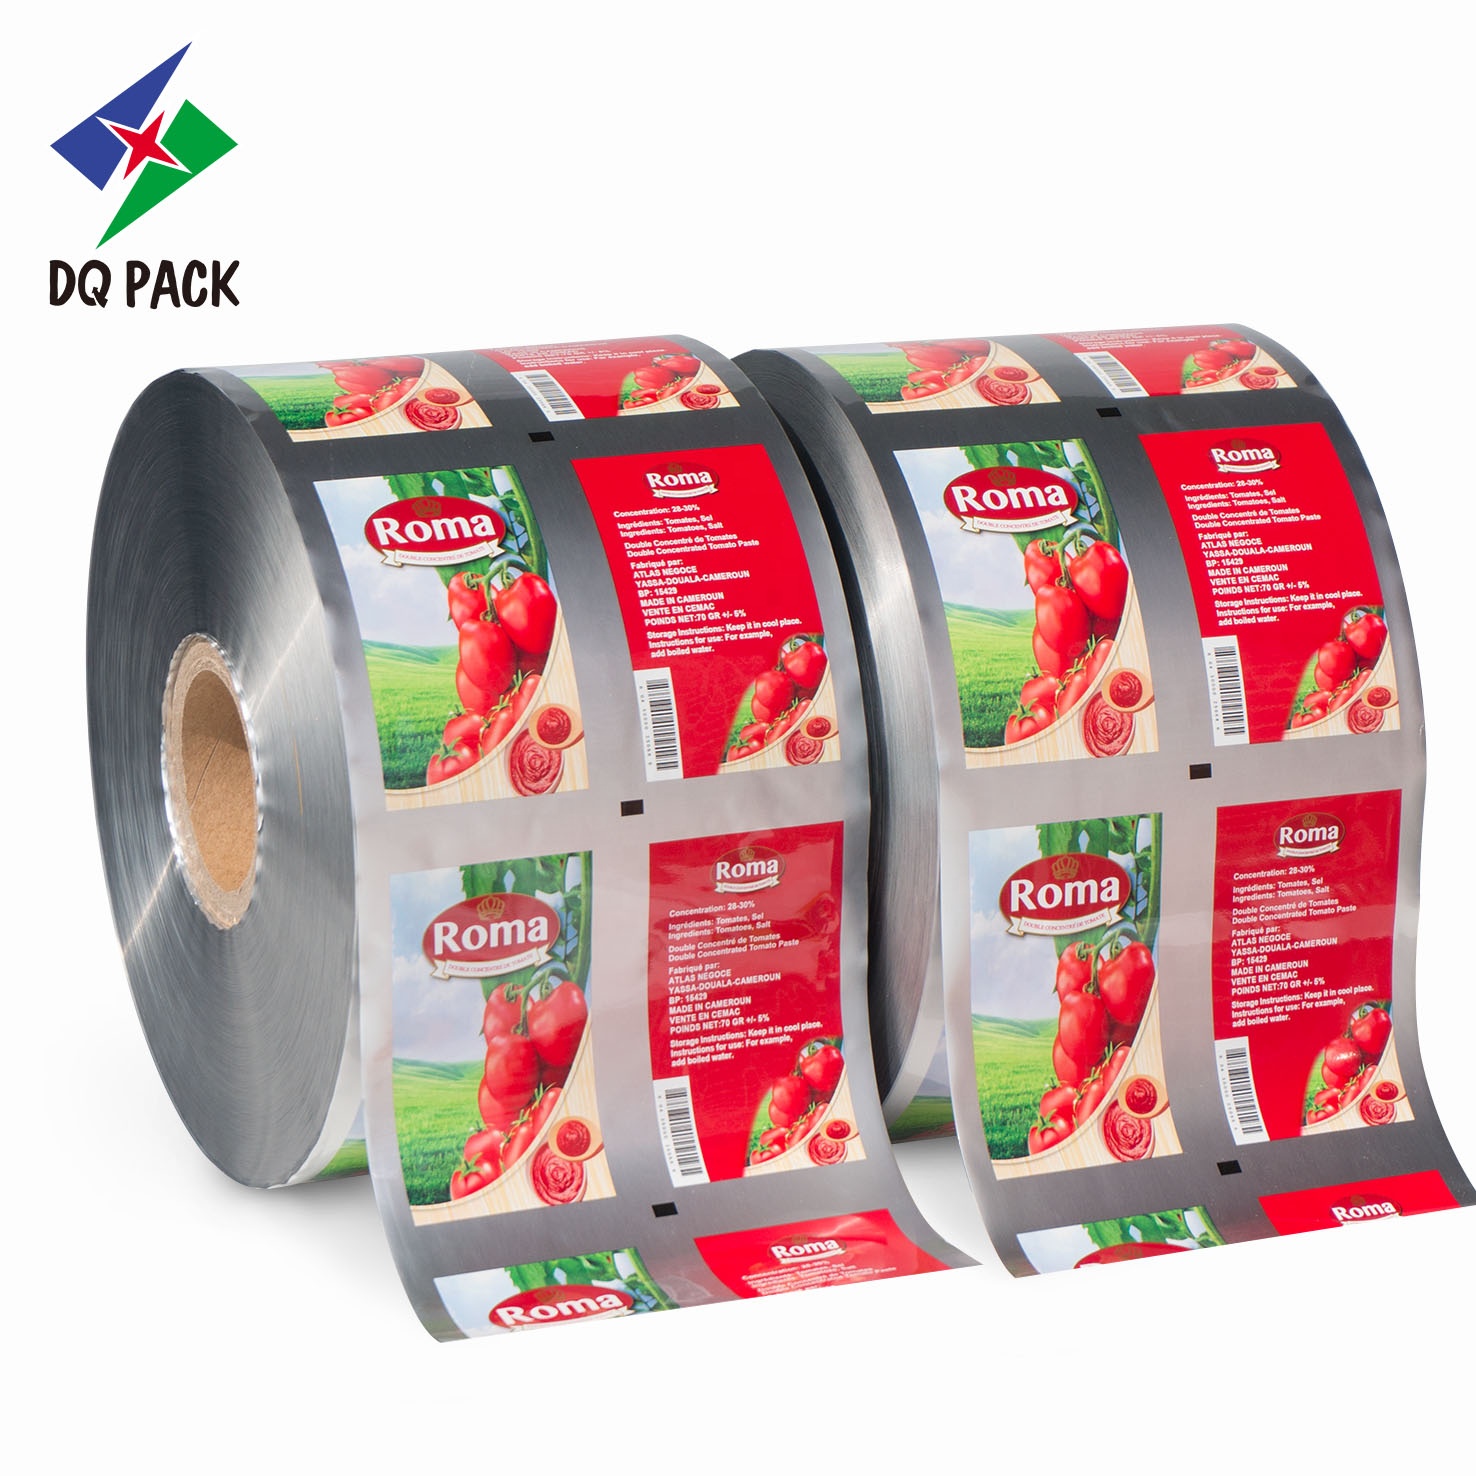 DQ PACK Hologram lamination plastic packaging roll film Manufacturer jumbo printed sachet film roll for tomato sauce